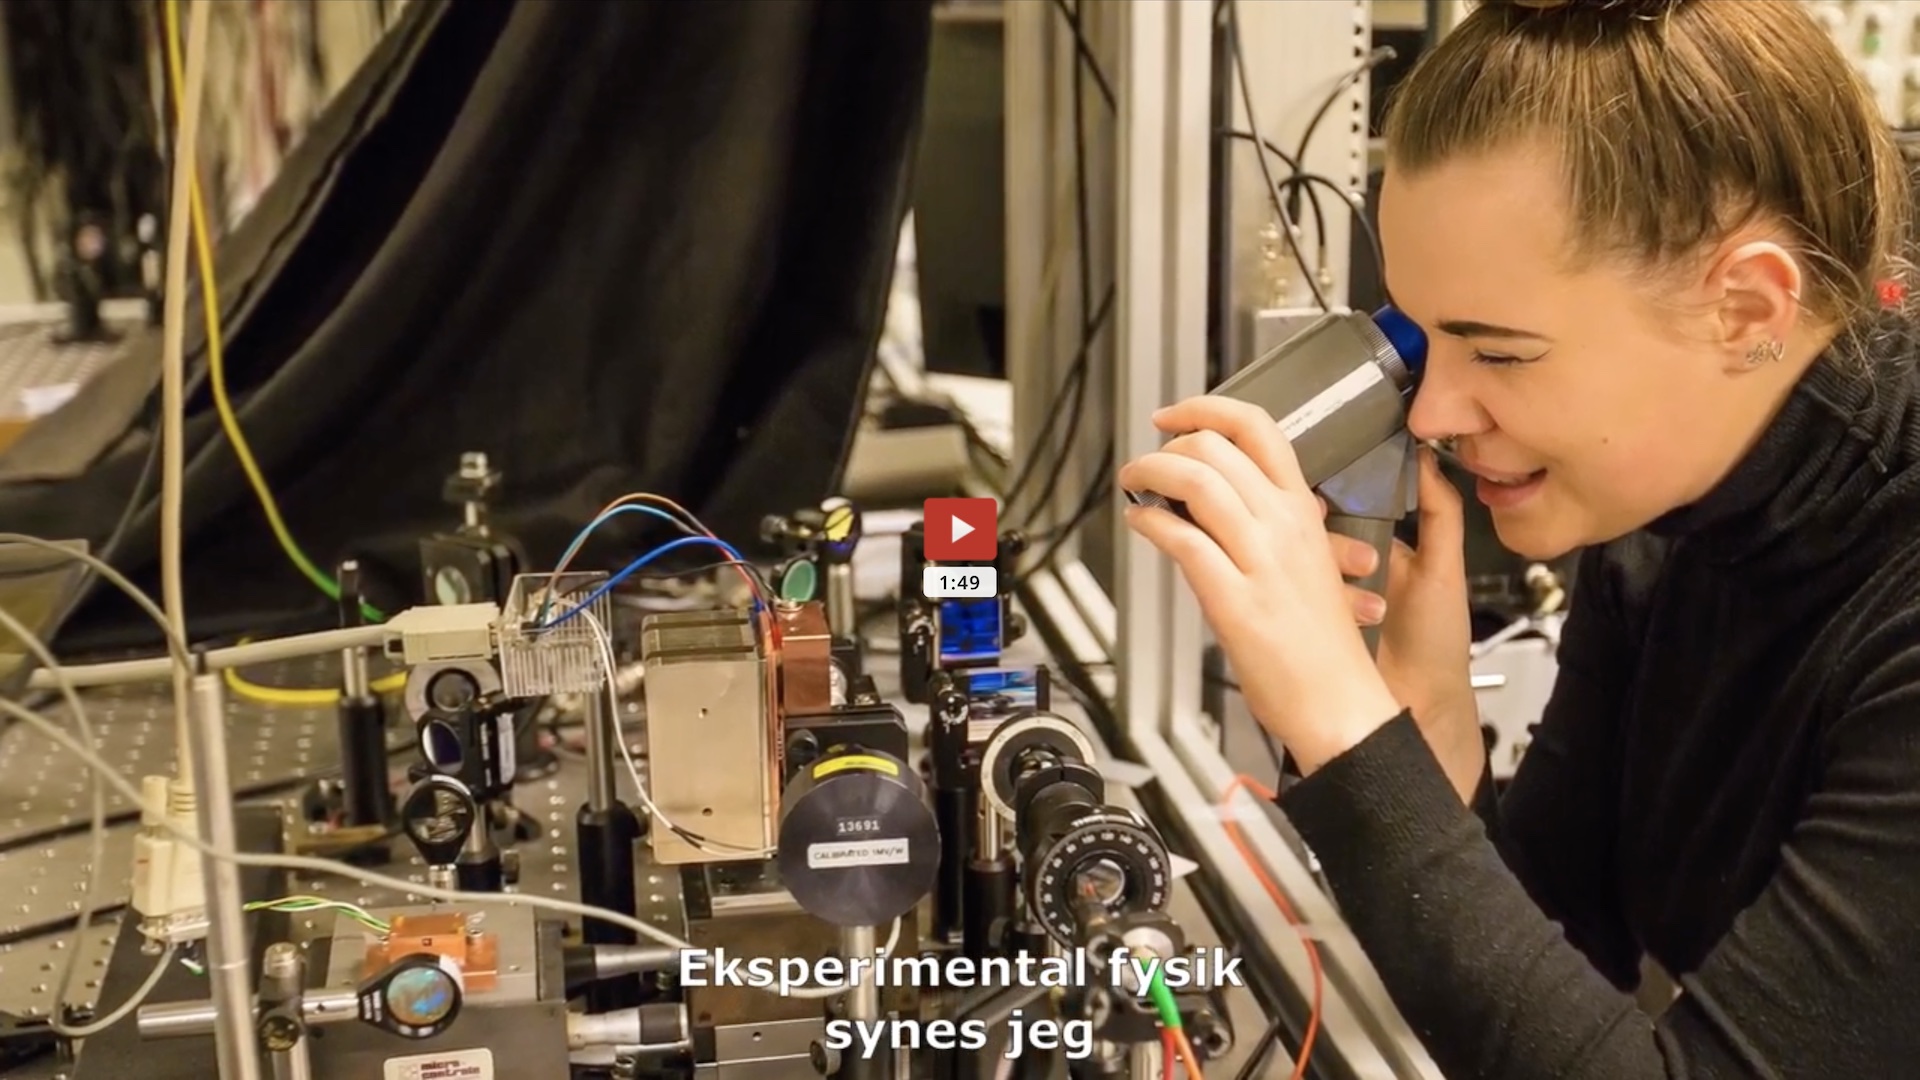 Video om Sigrid, uddannet fysiker i kvanteoptik